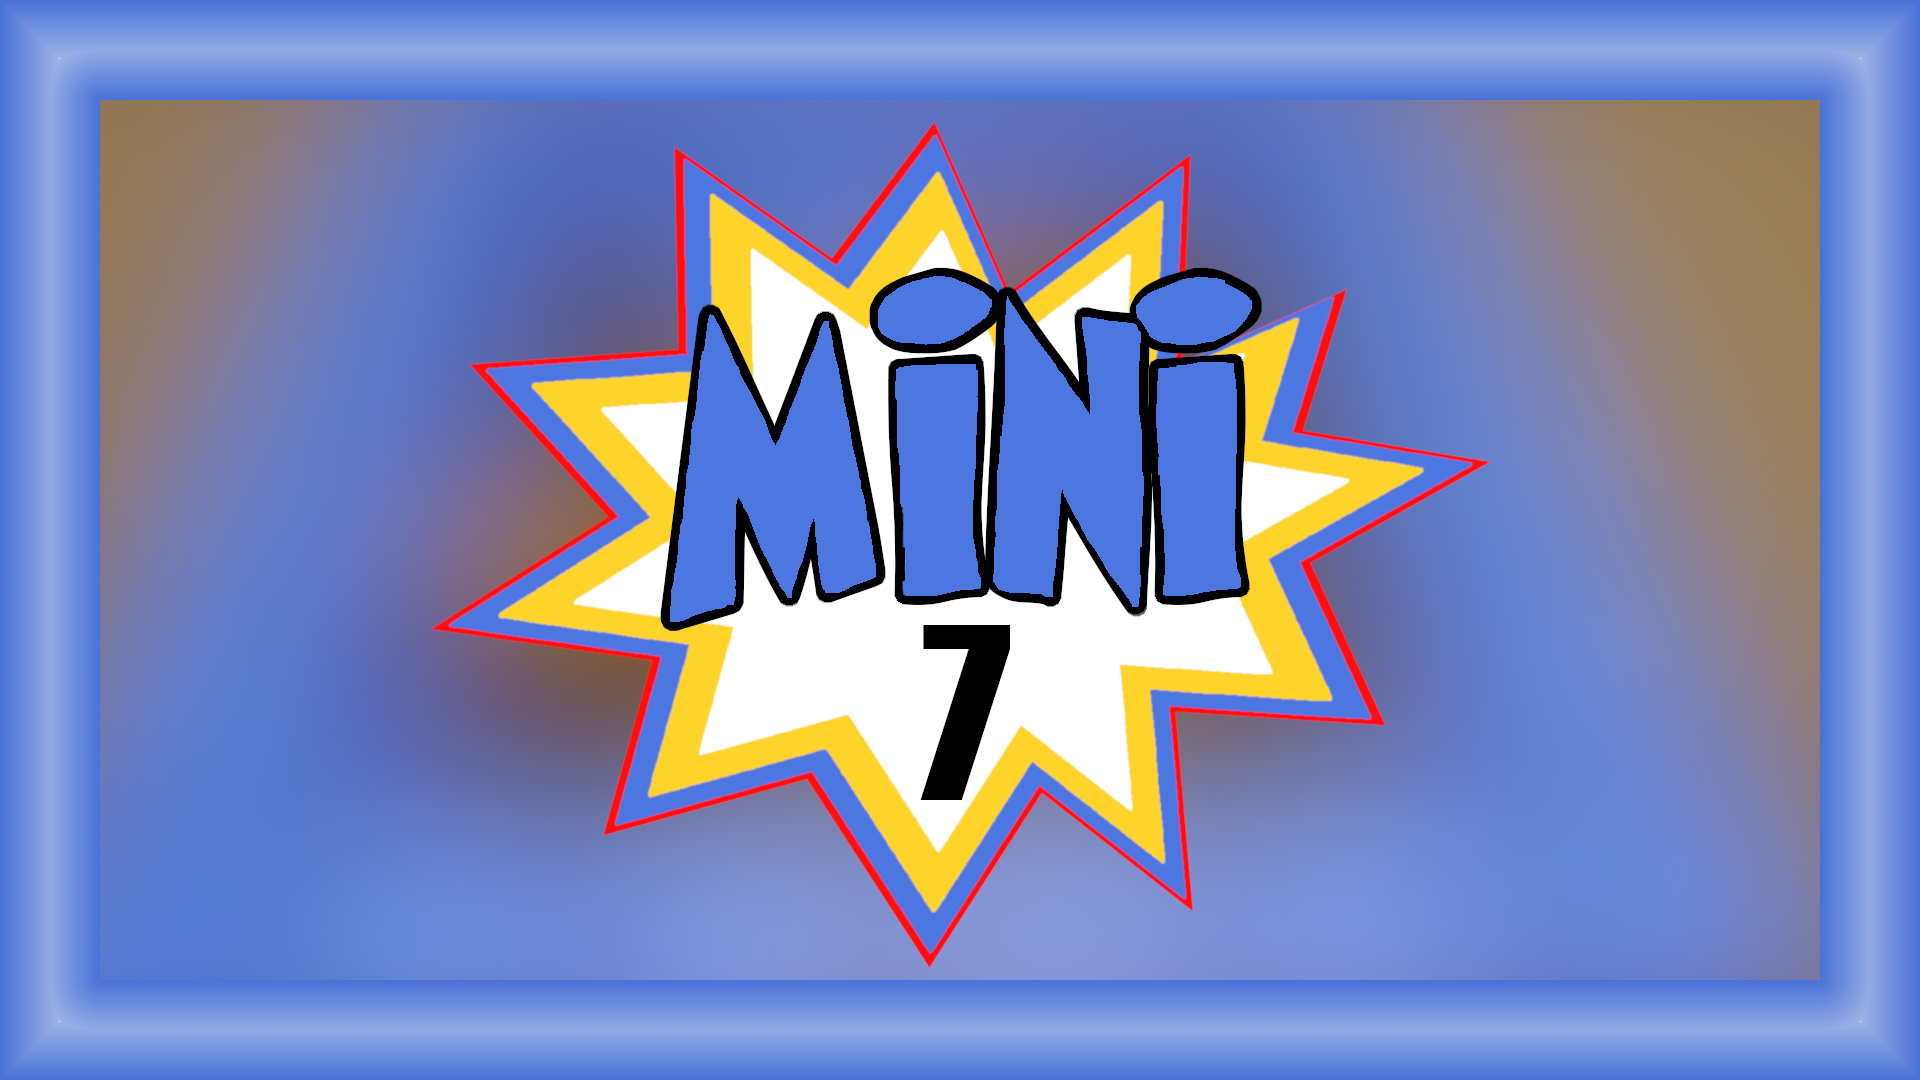 Mini 7